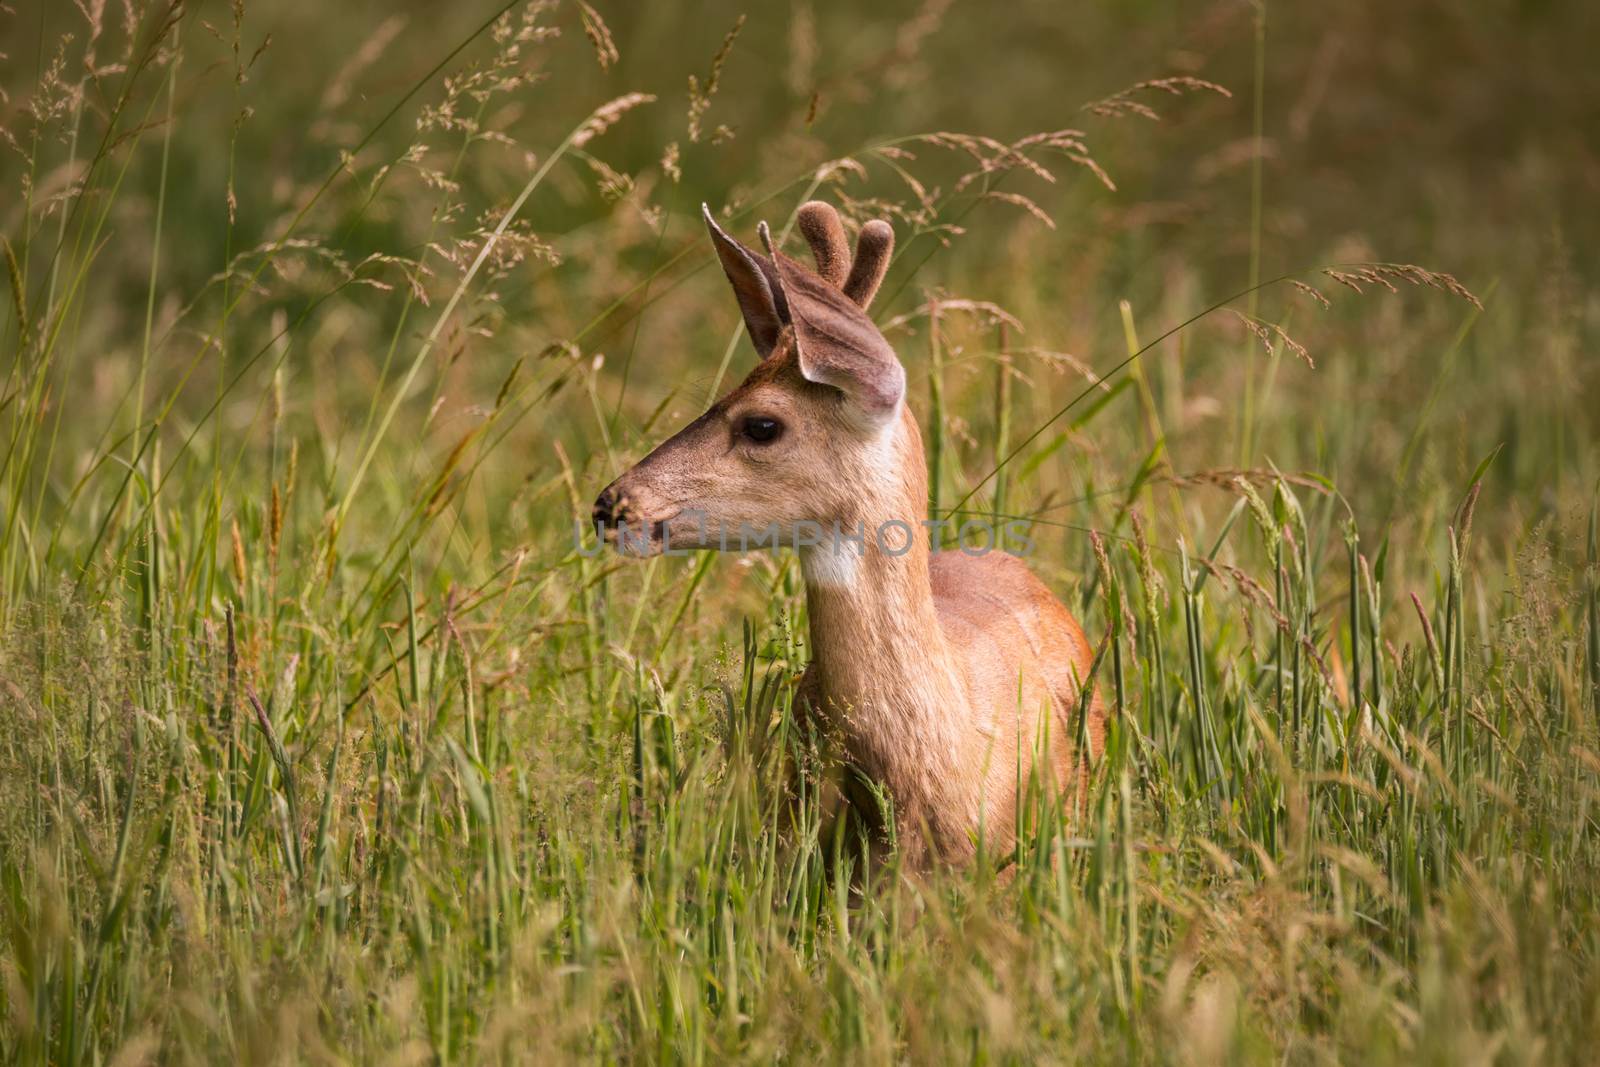 Single Juvenile Deer Standing in Tall Grass